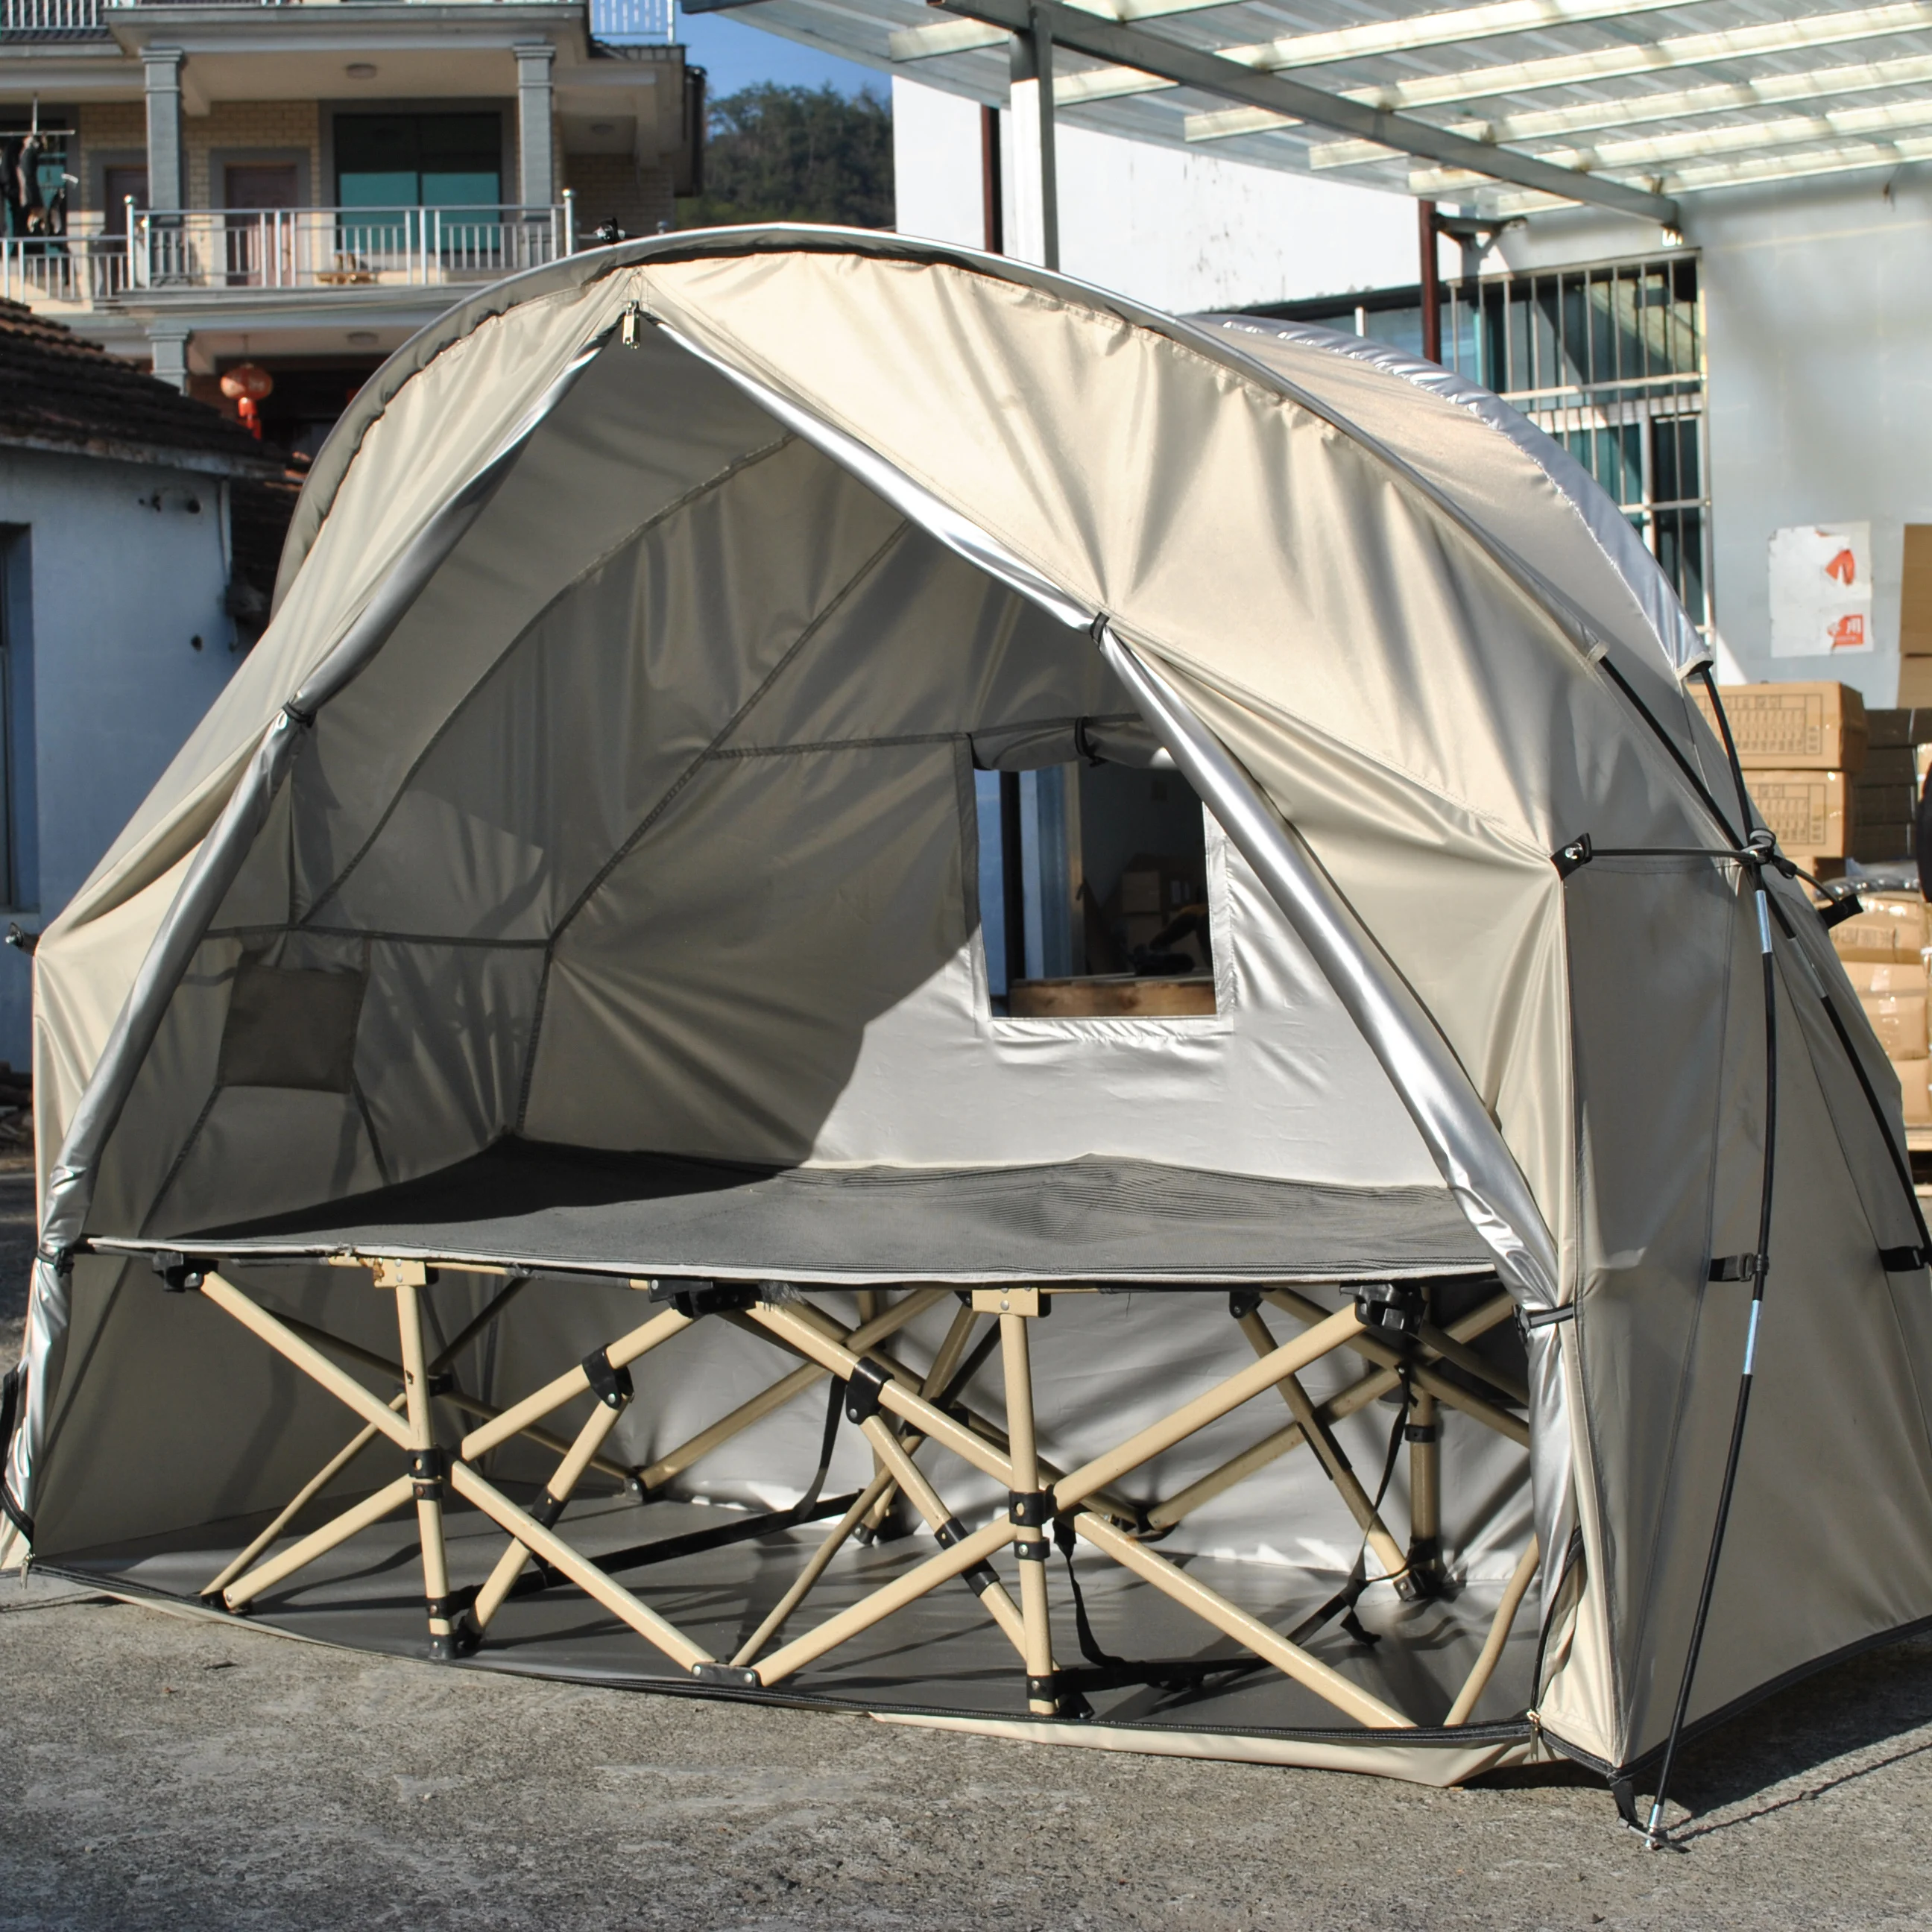 Прочная палатка для детской кроватки Одиночная палатка для кемпинга, водонепроницаемая легкая теплая палатка 4000 мм. В комплект не входит детская кроватка 0